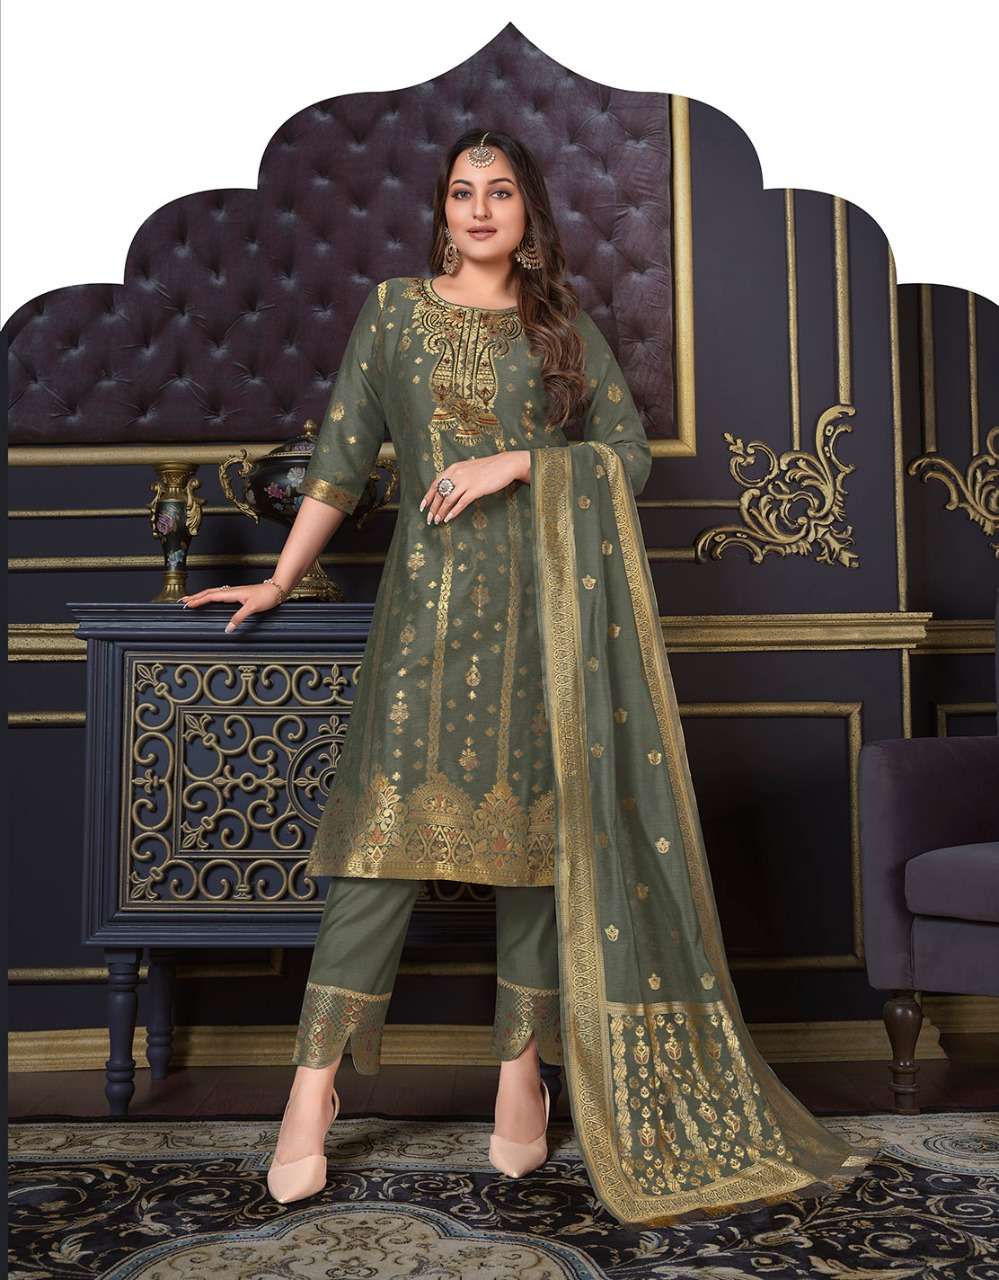 lily & lali silk kari vol-2 10125-10128 series banarsi jequard spun silk ready made salwar kameez online price surat